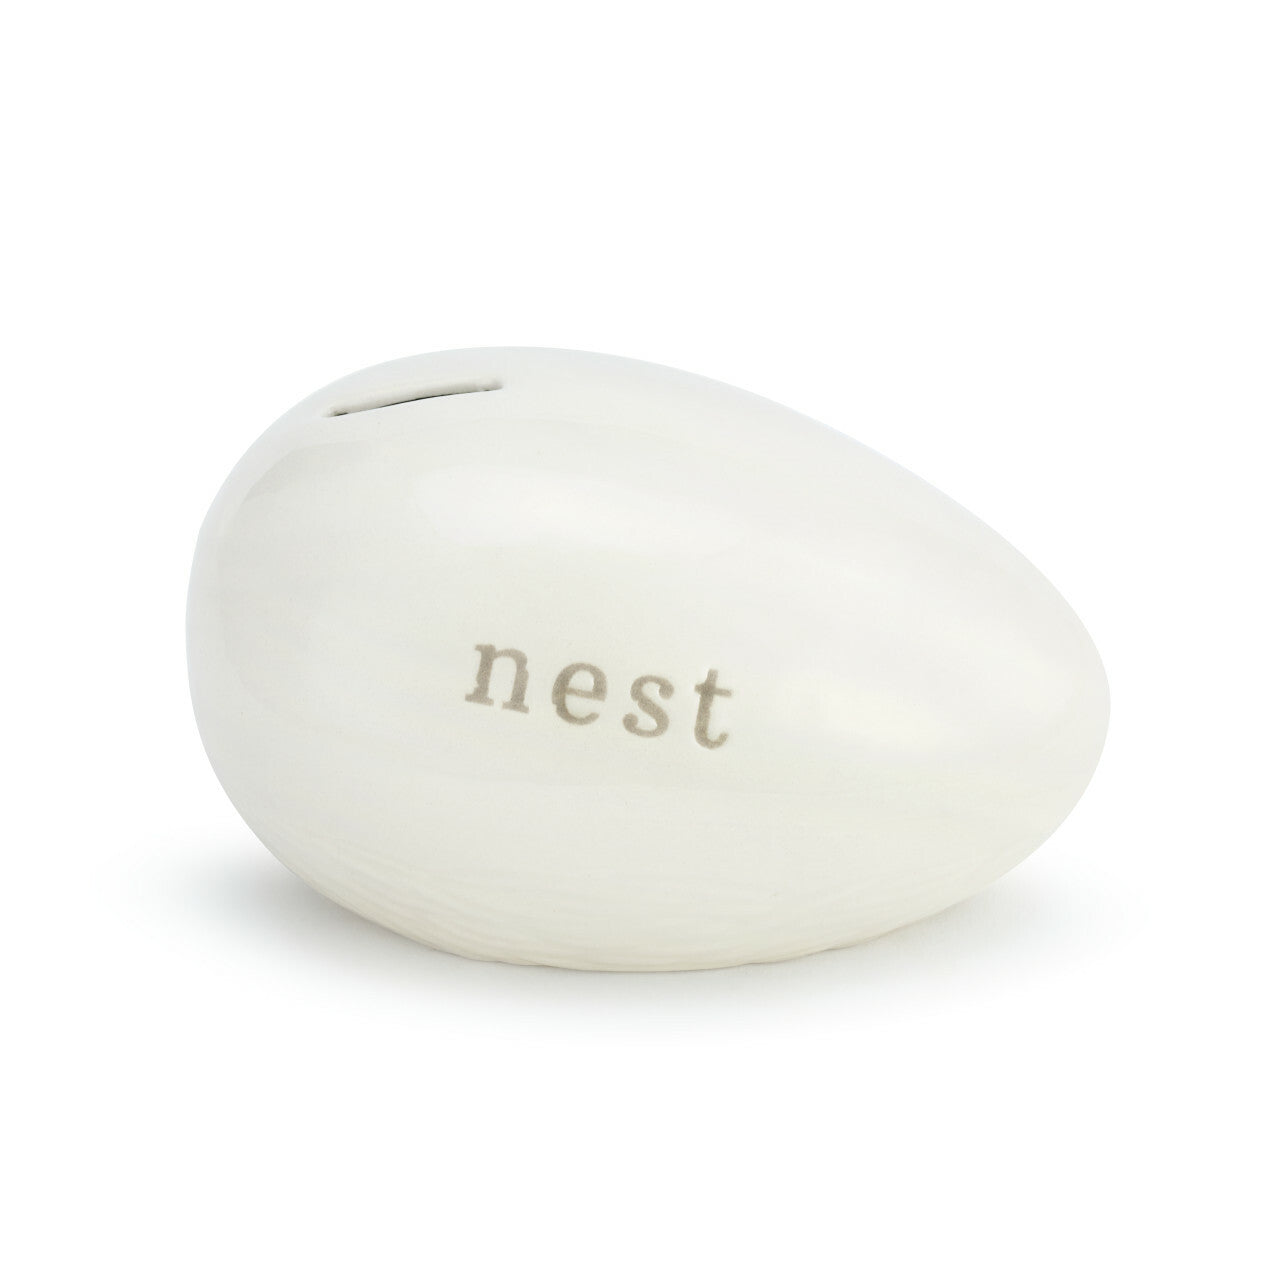 Bank - Nest Egg